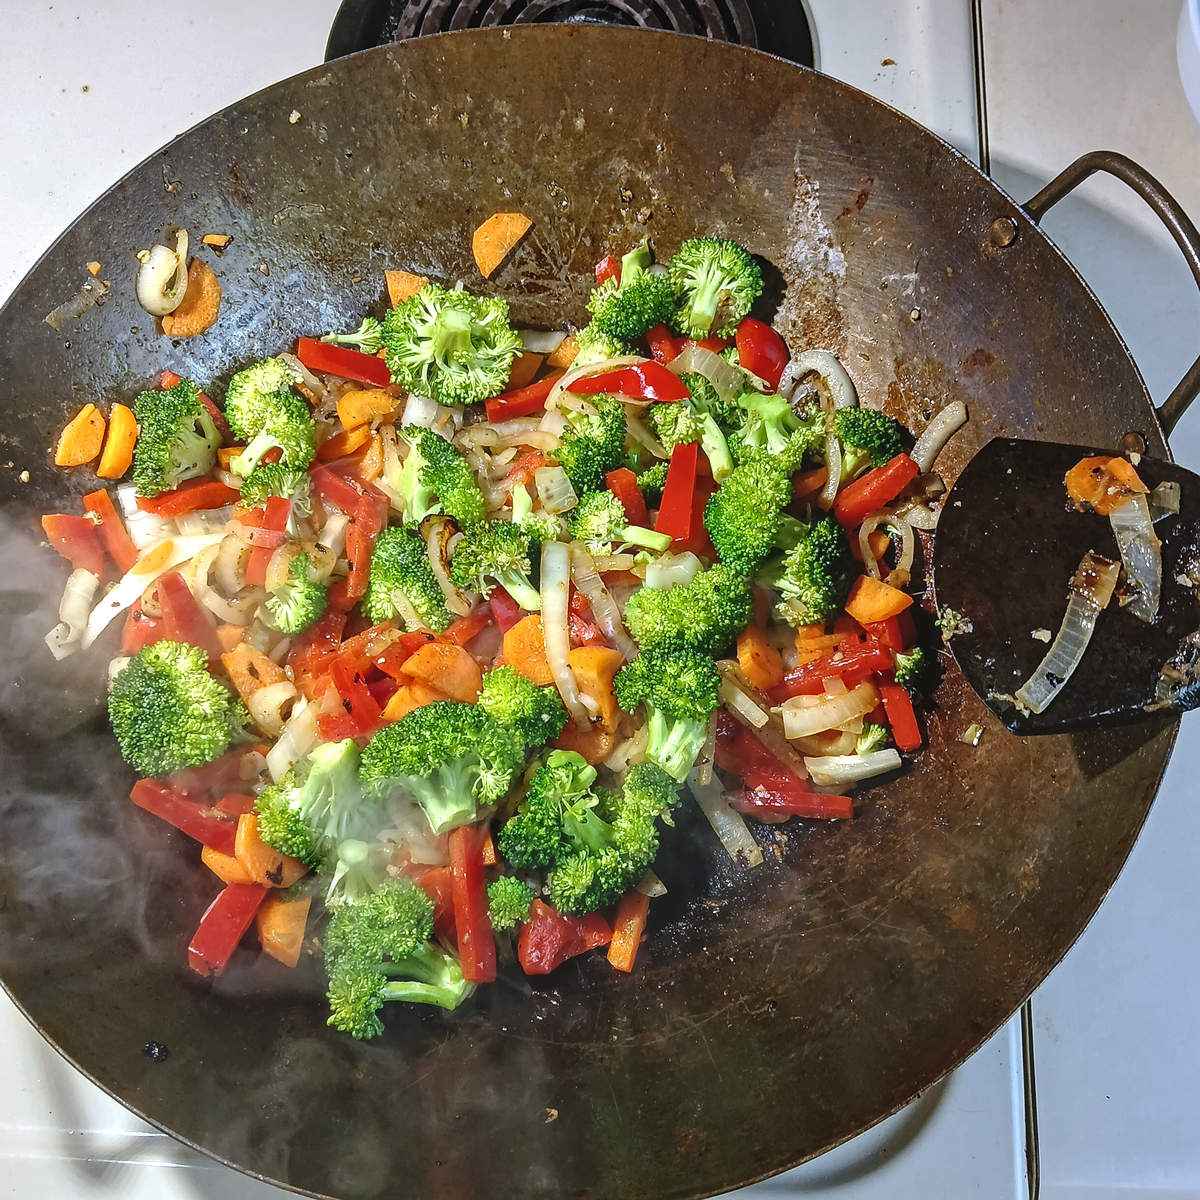 Low sodium chicken stir fry veggies in wok.